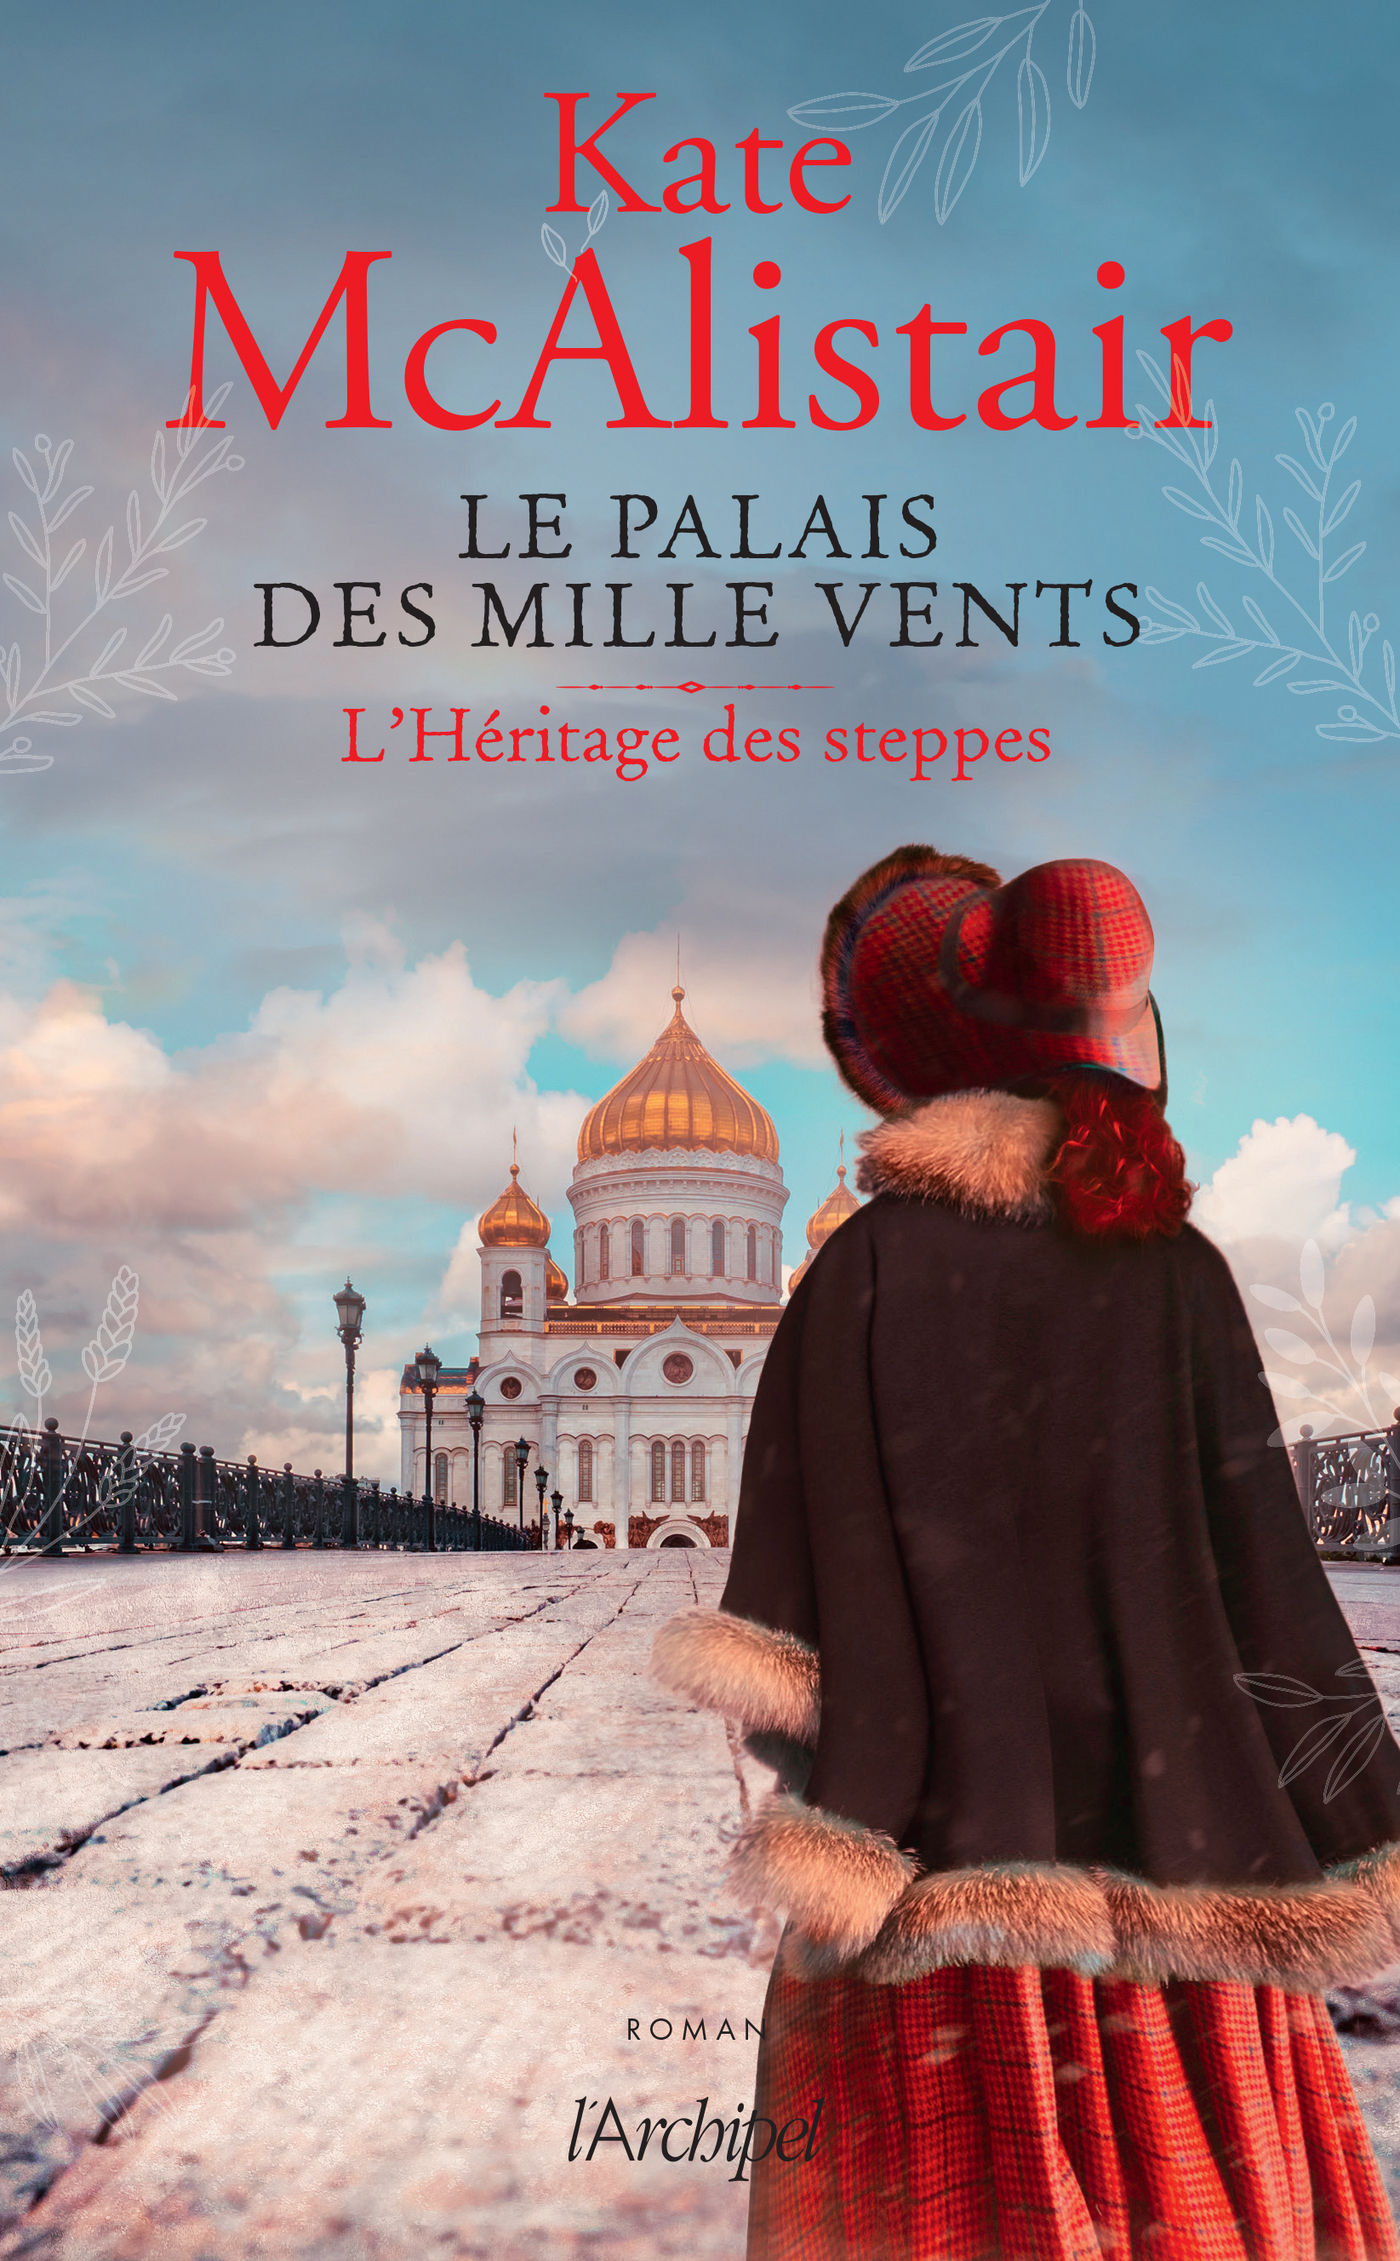 Afficher "Le palais des Mille Vents tome 1"